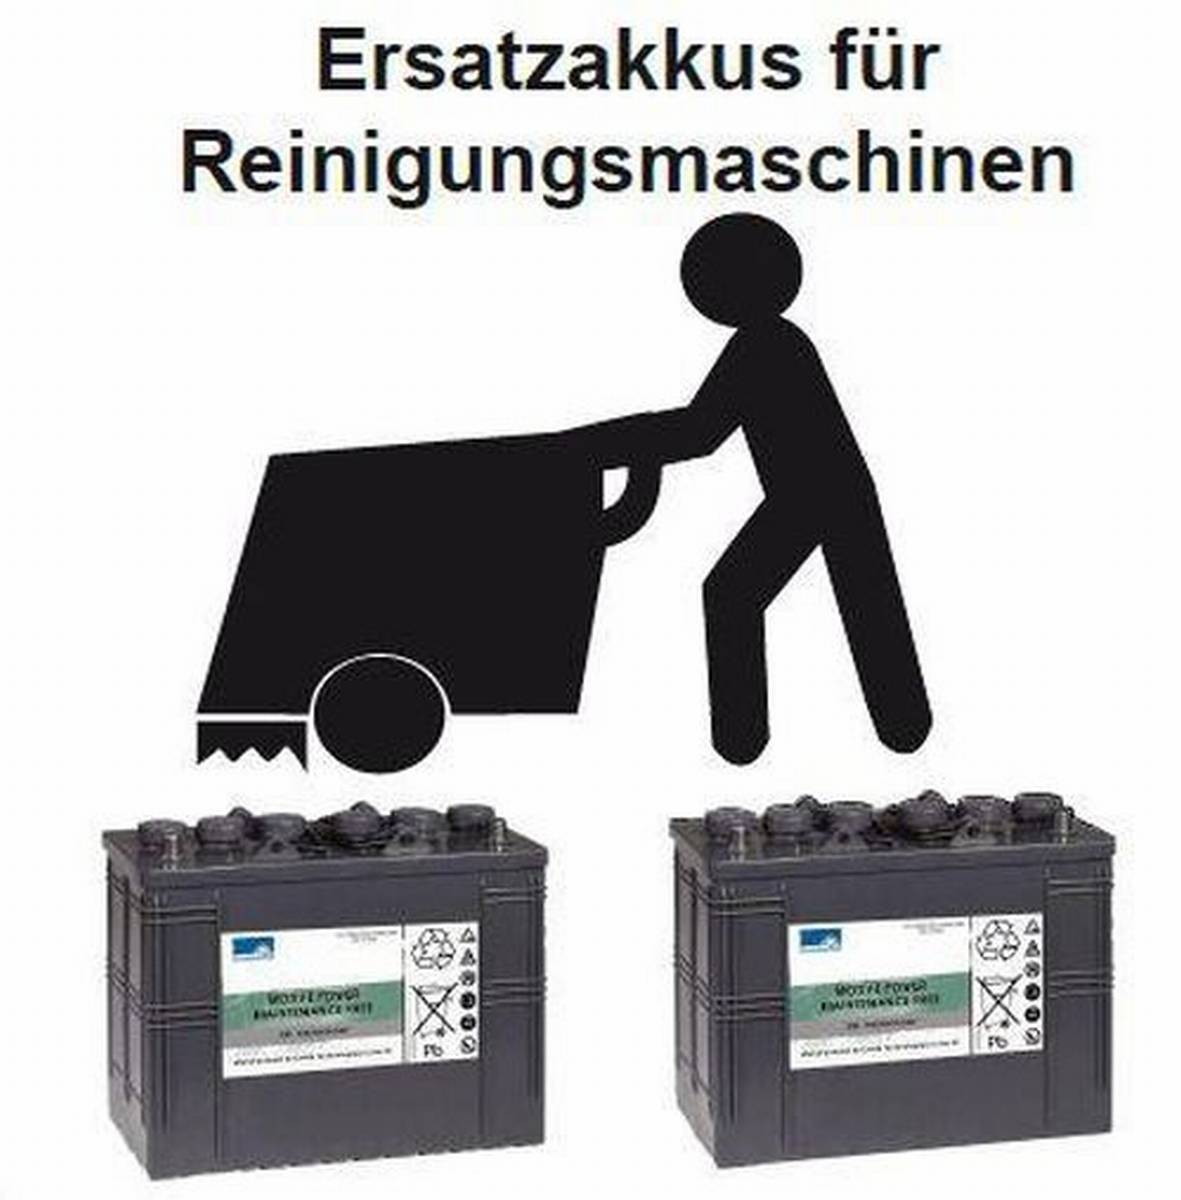 Batteria di ricambio per la macchina di pulizia Nilfisk BA 531 ATeile Nr. 80564400